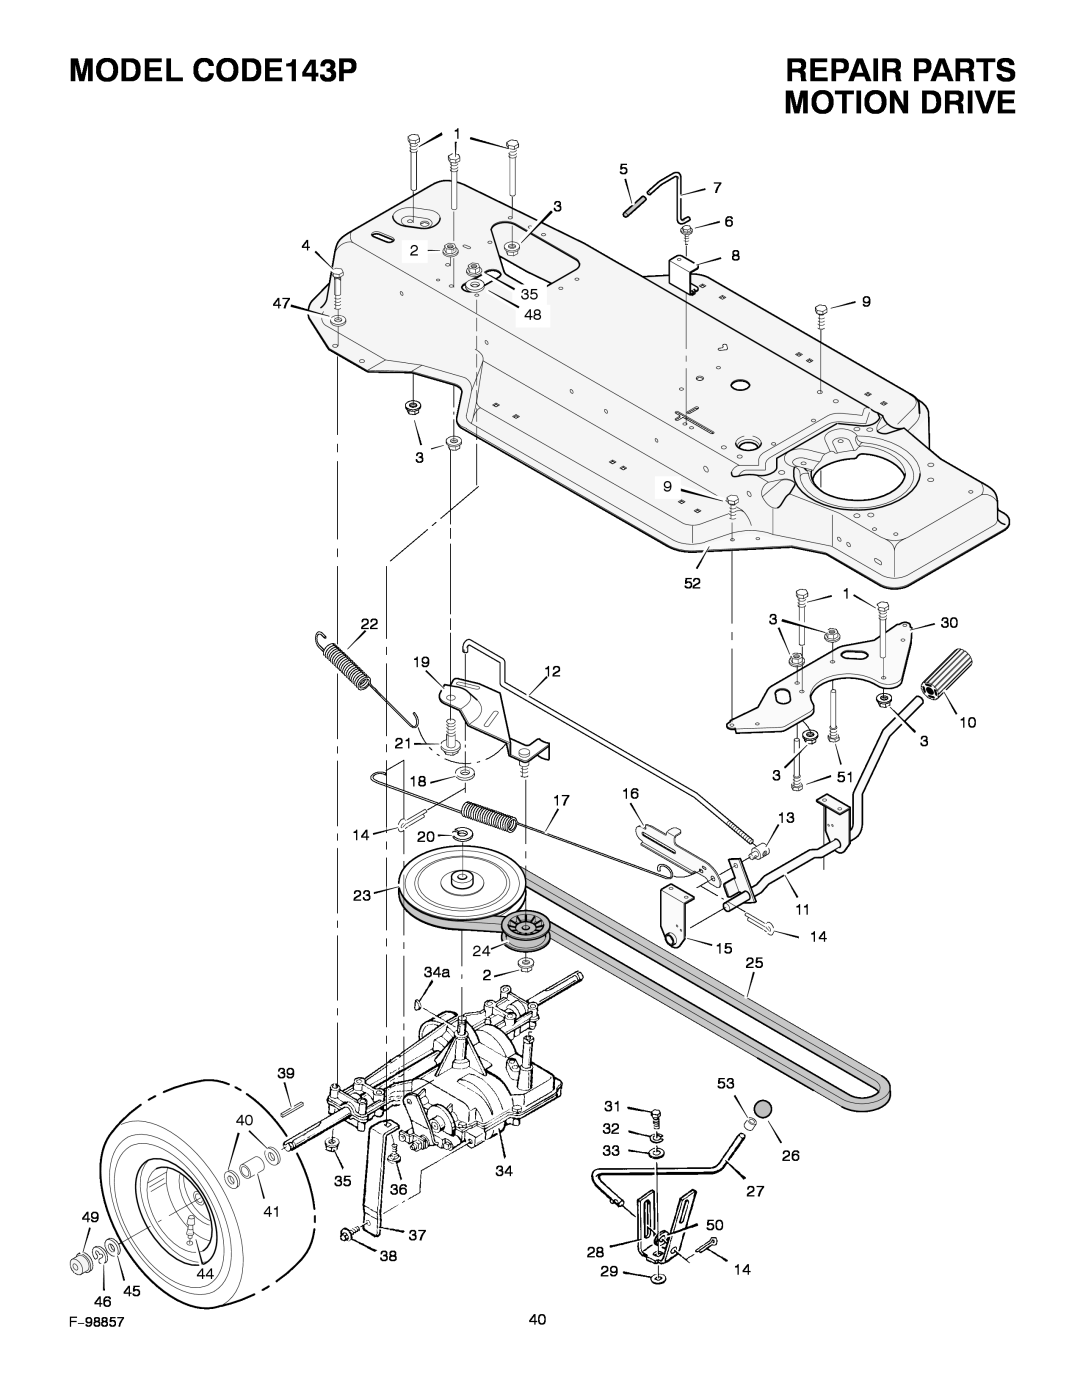 Hayter Mowers 30-Dec manual Repair Parts Motion Drive, MODEL CODE143P, 4941 